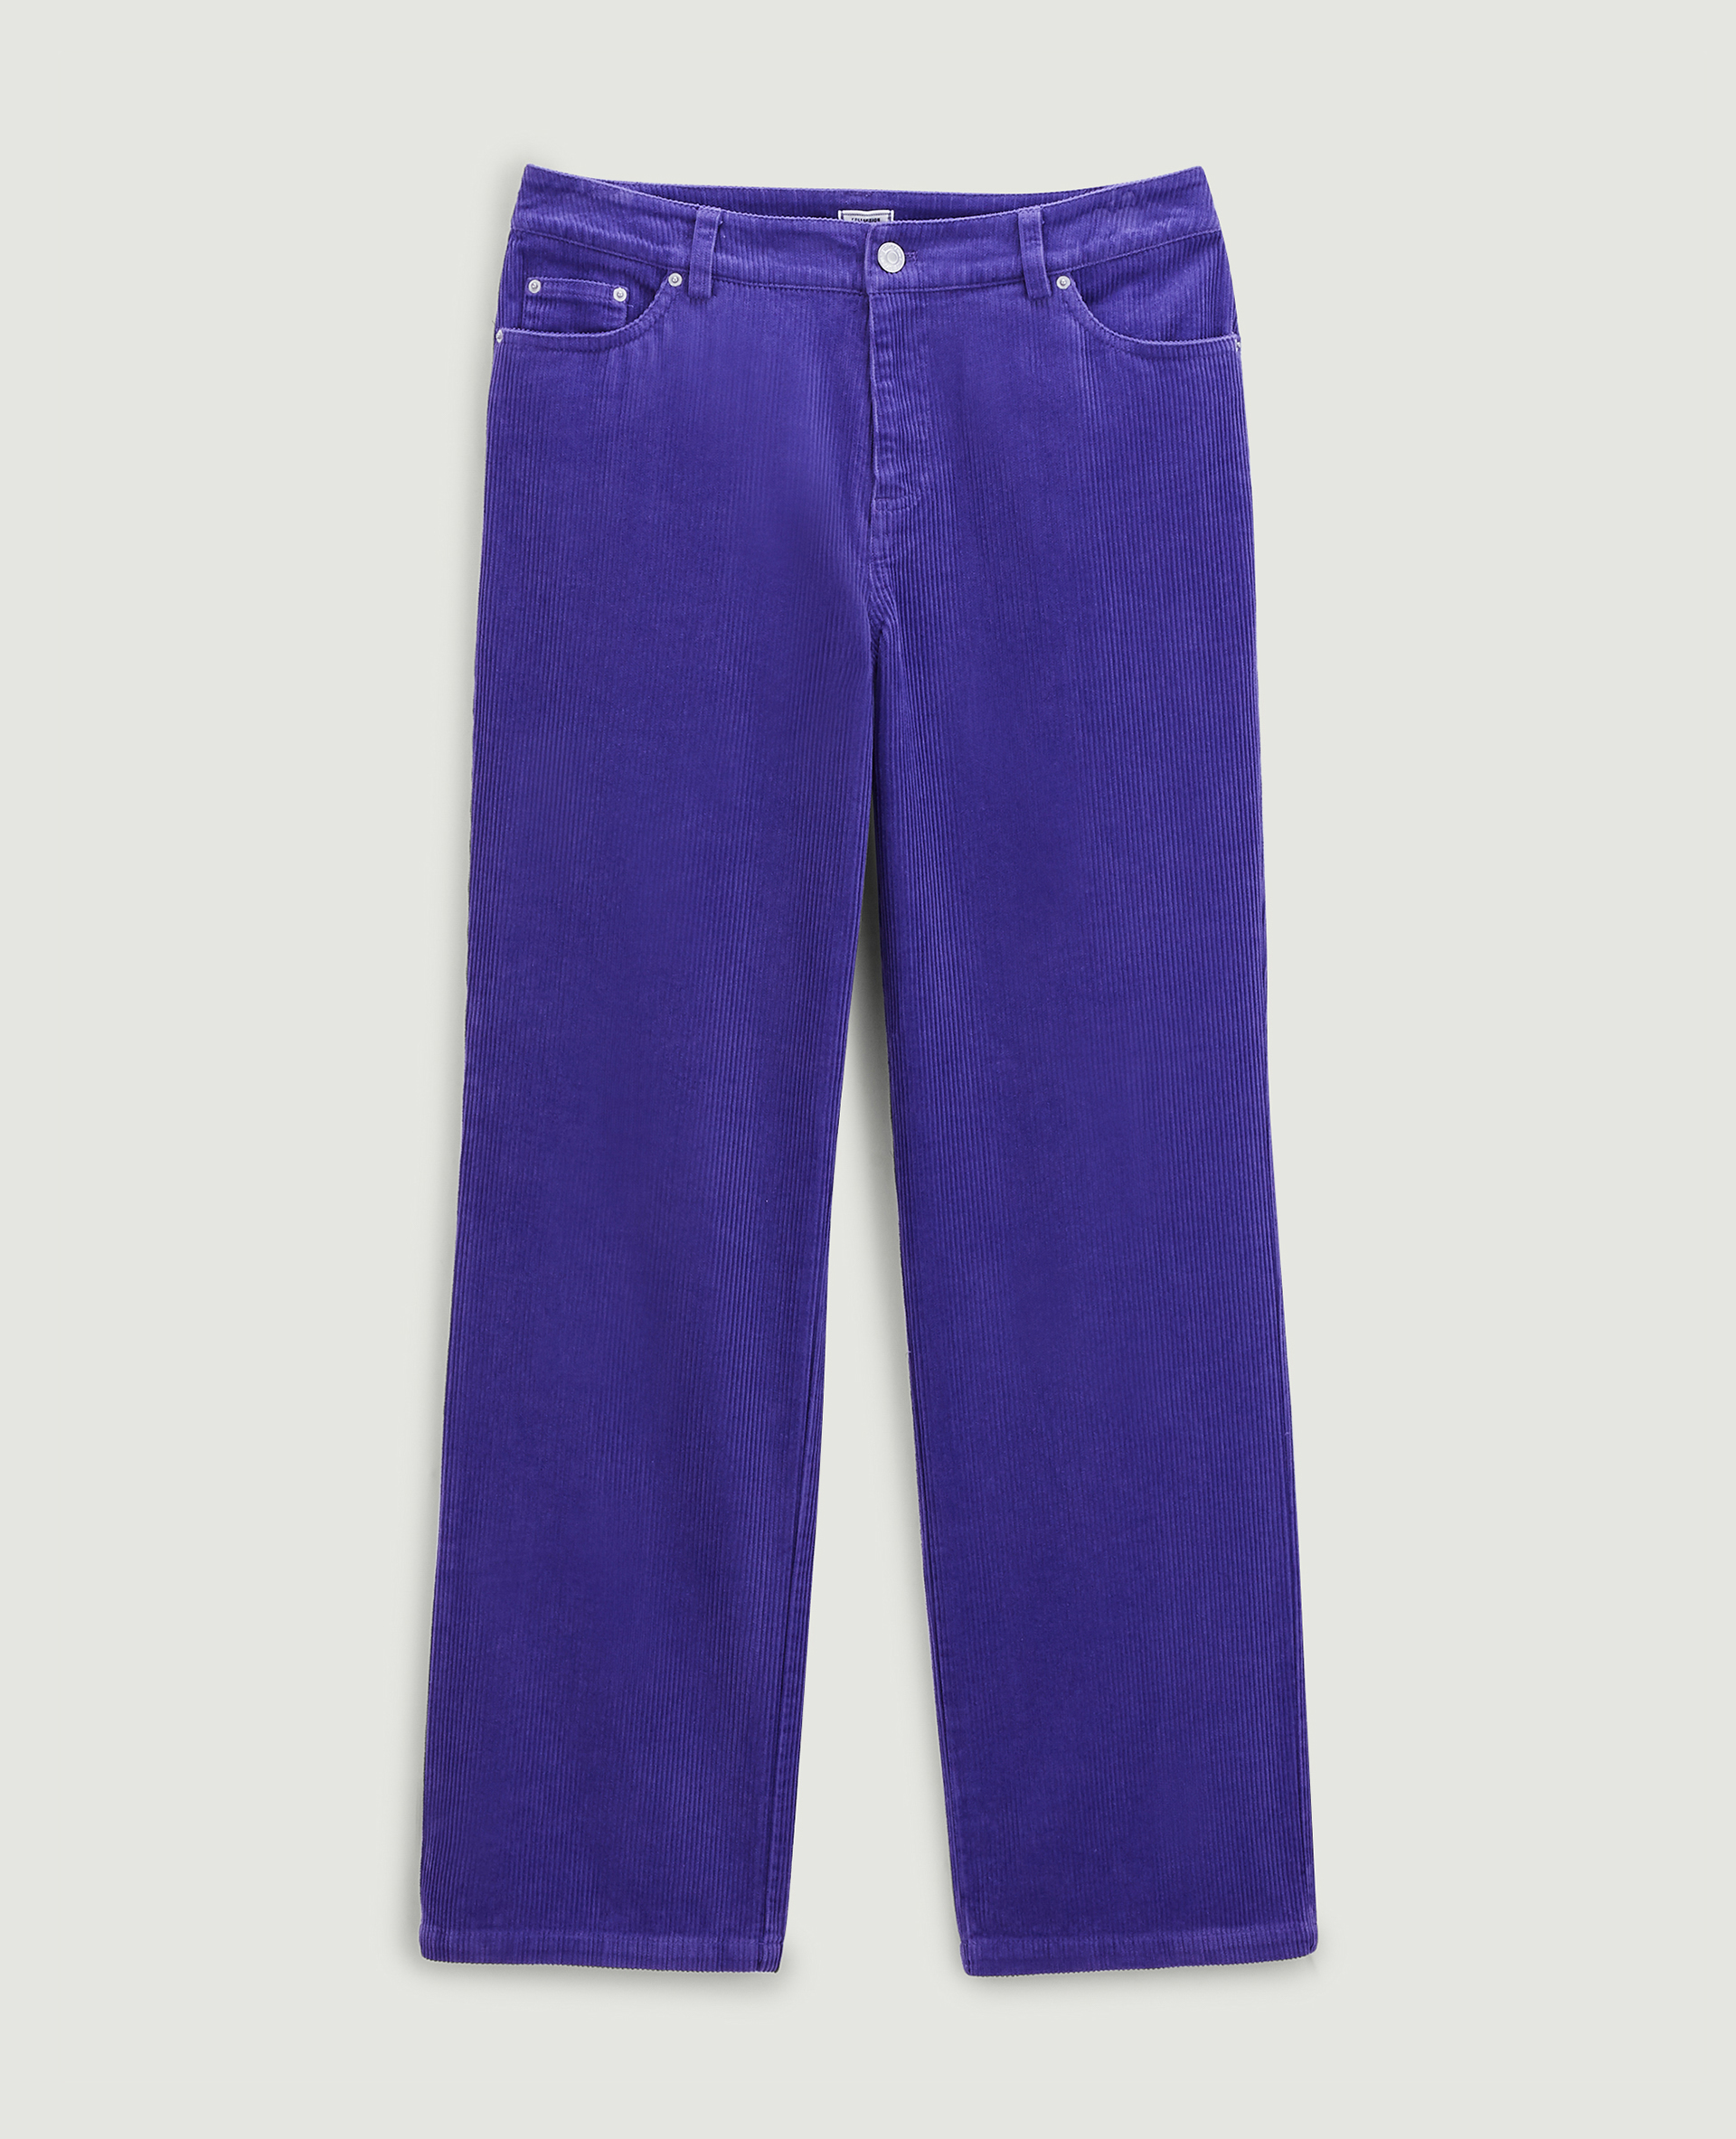 Pantalon droit en velours côtelé violet - Pimkie